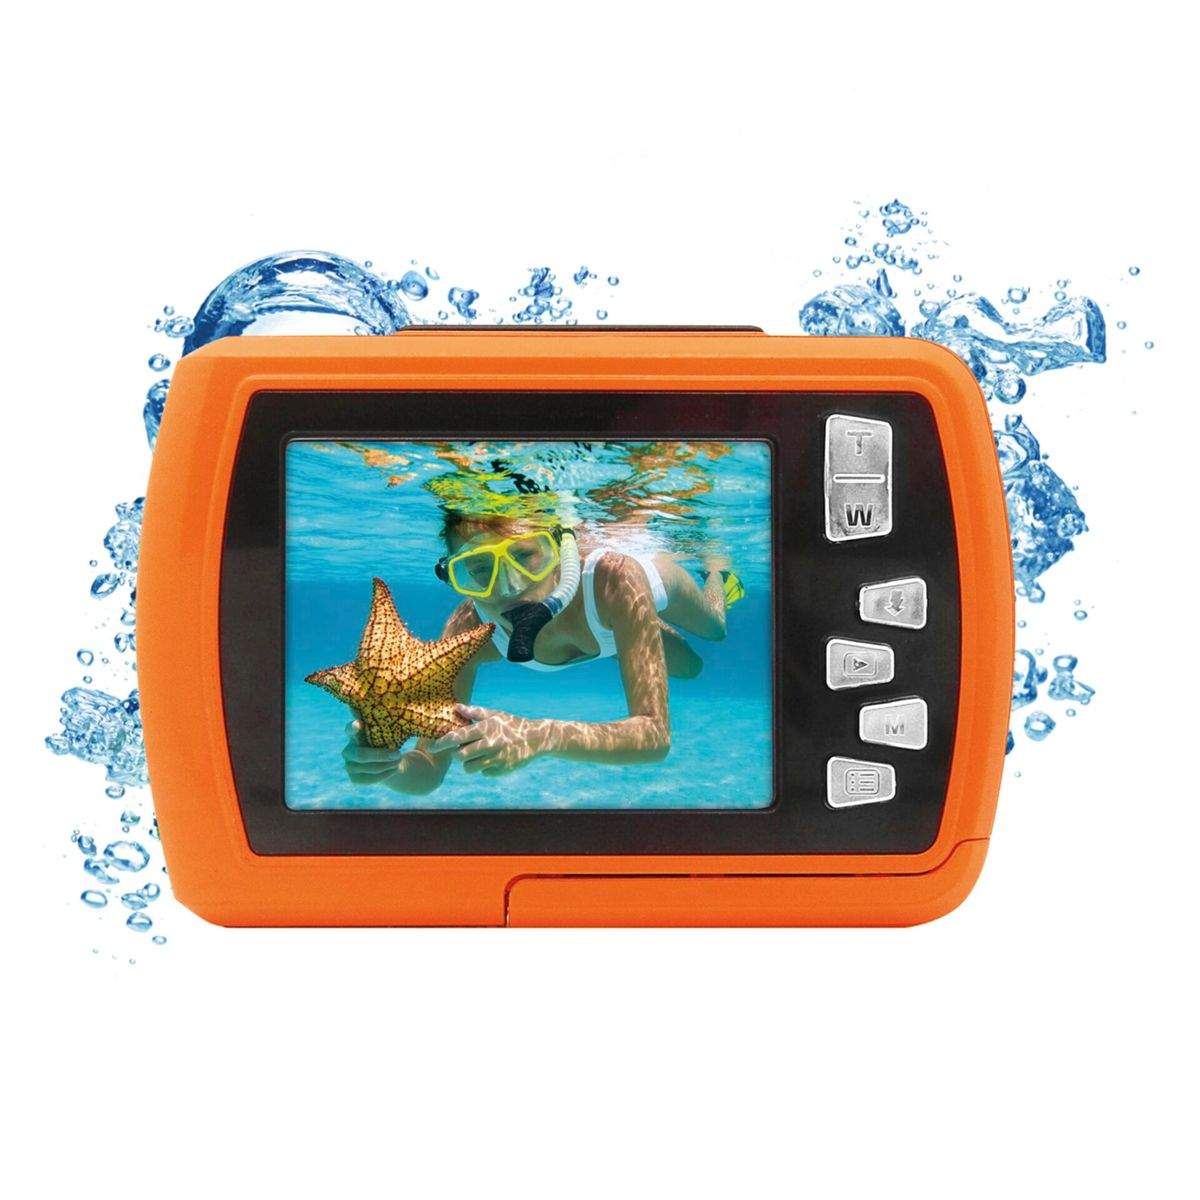 Unterwasserkamera Orange orange Aquapix W2024 EASYPIX Splash